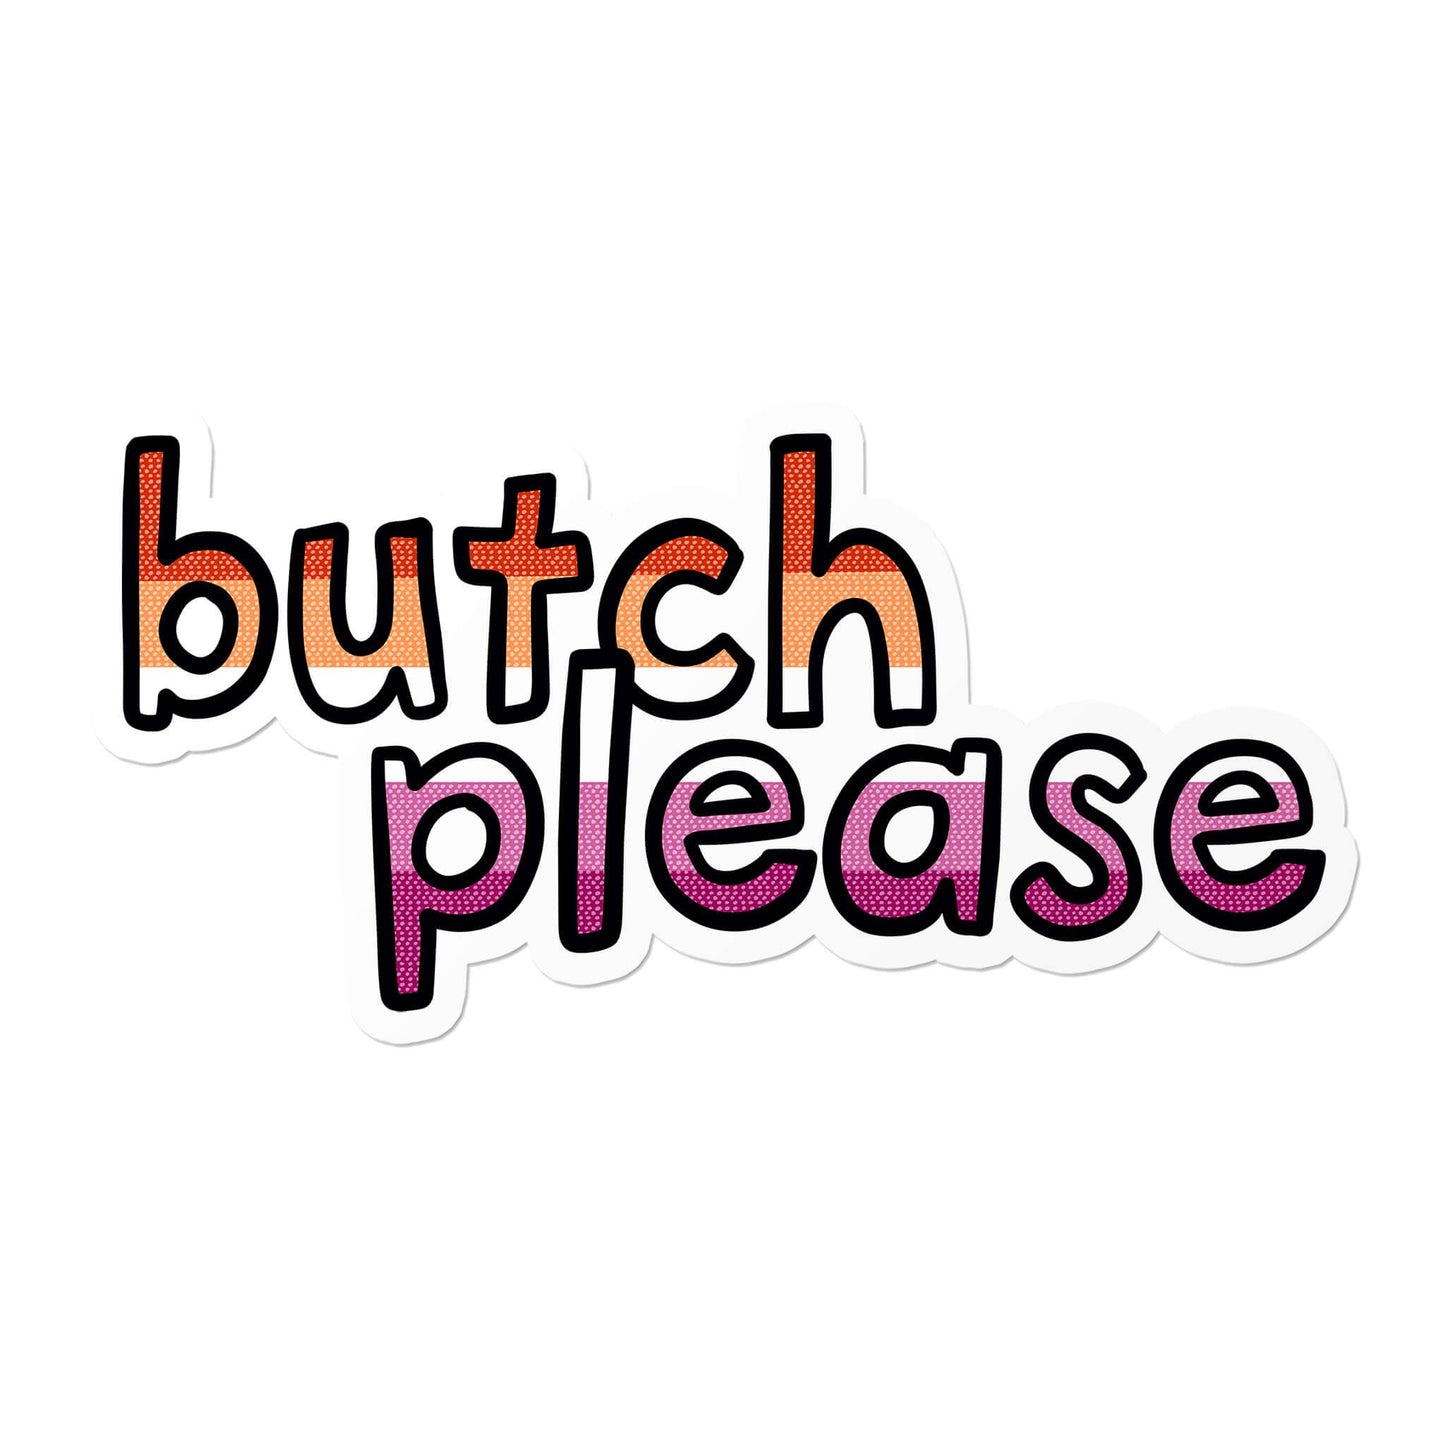 Lesbian Butch Please Waterproof LGBTQ+ Sticker